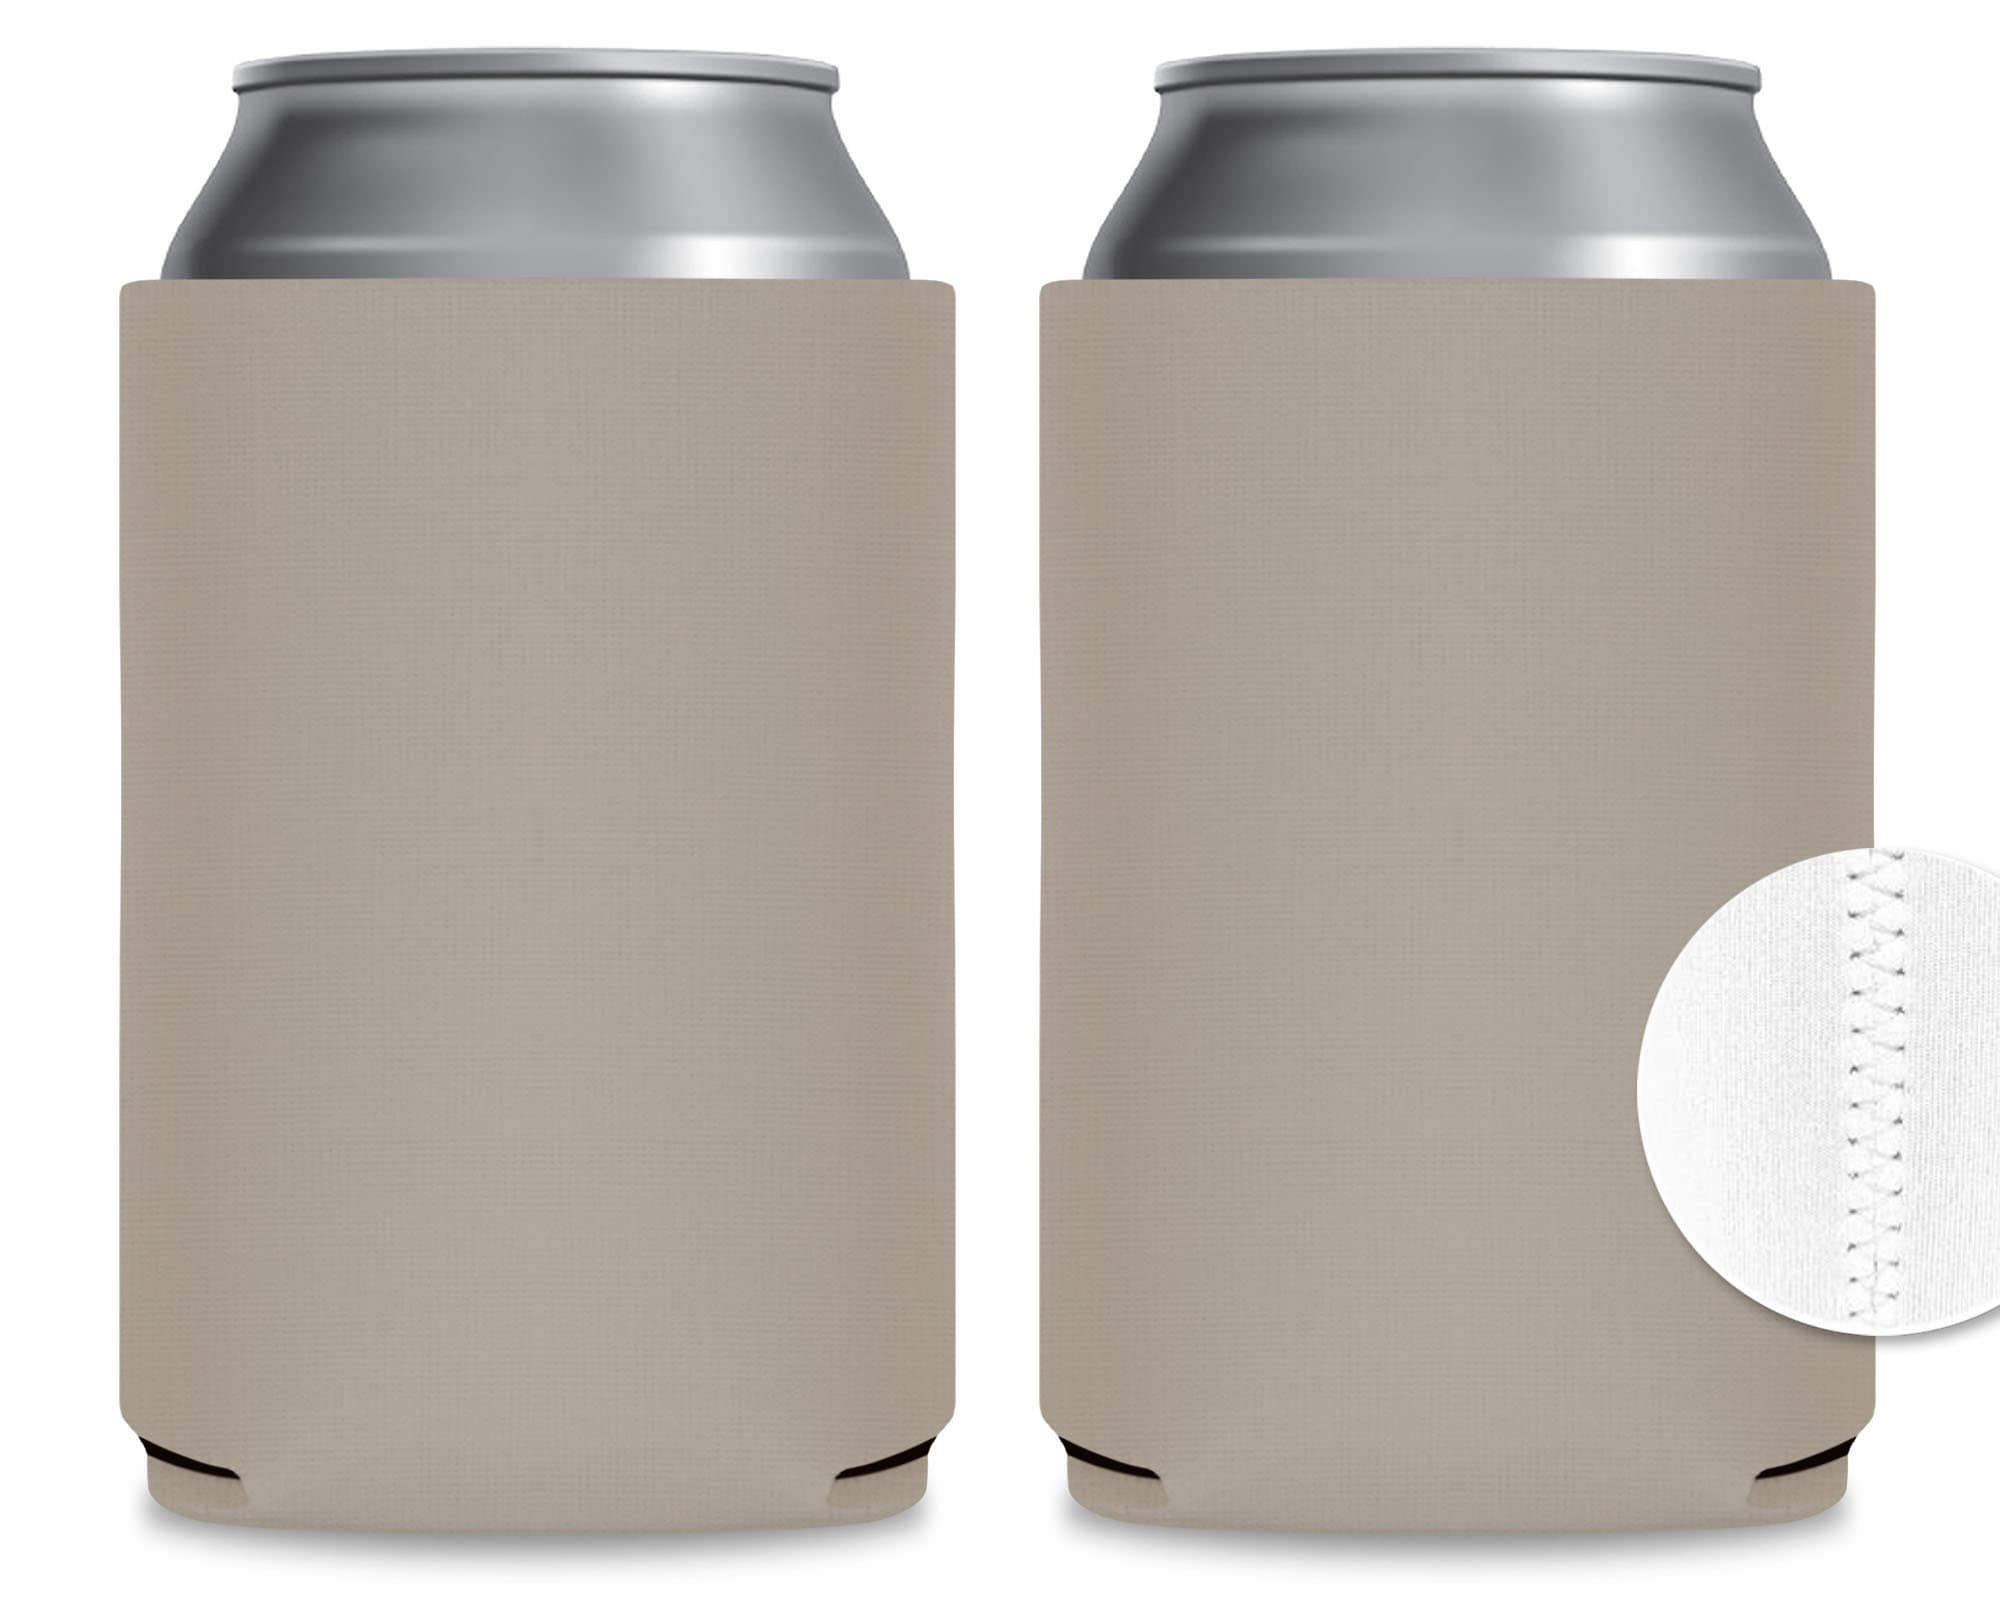 Koozies - Blank Neoprene - Neoprene Beer Coolies for Cans